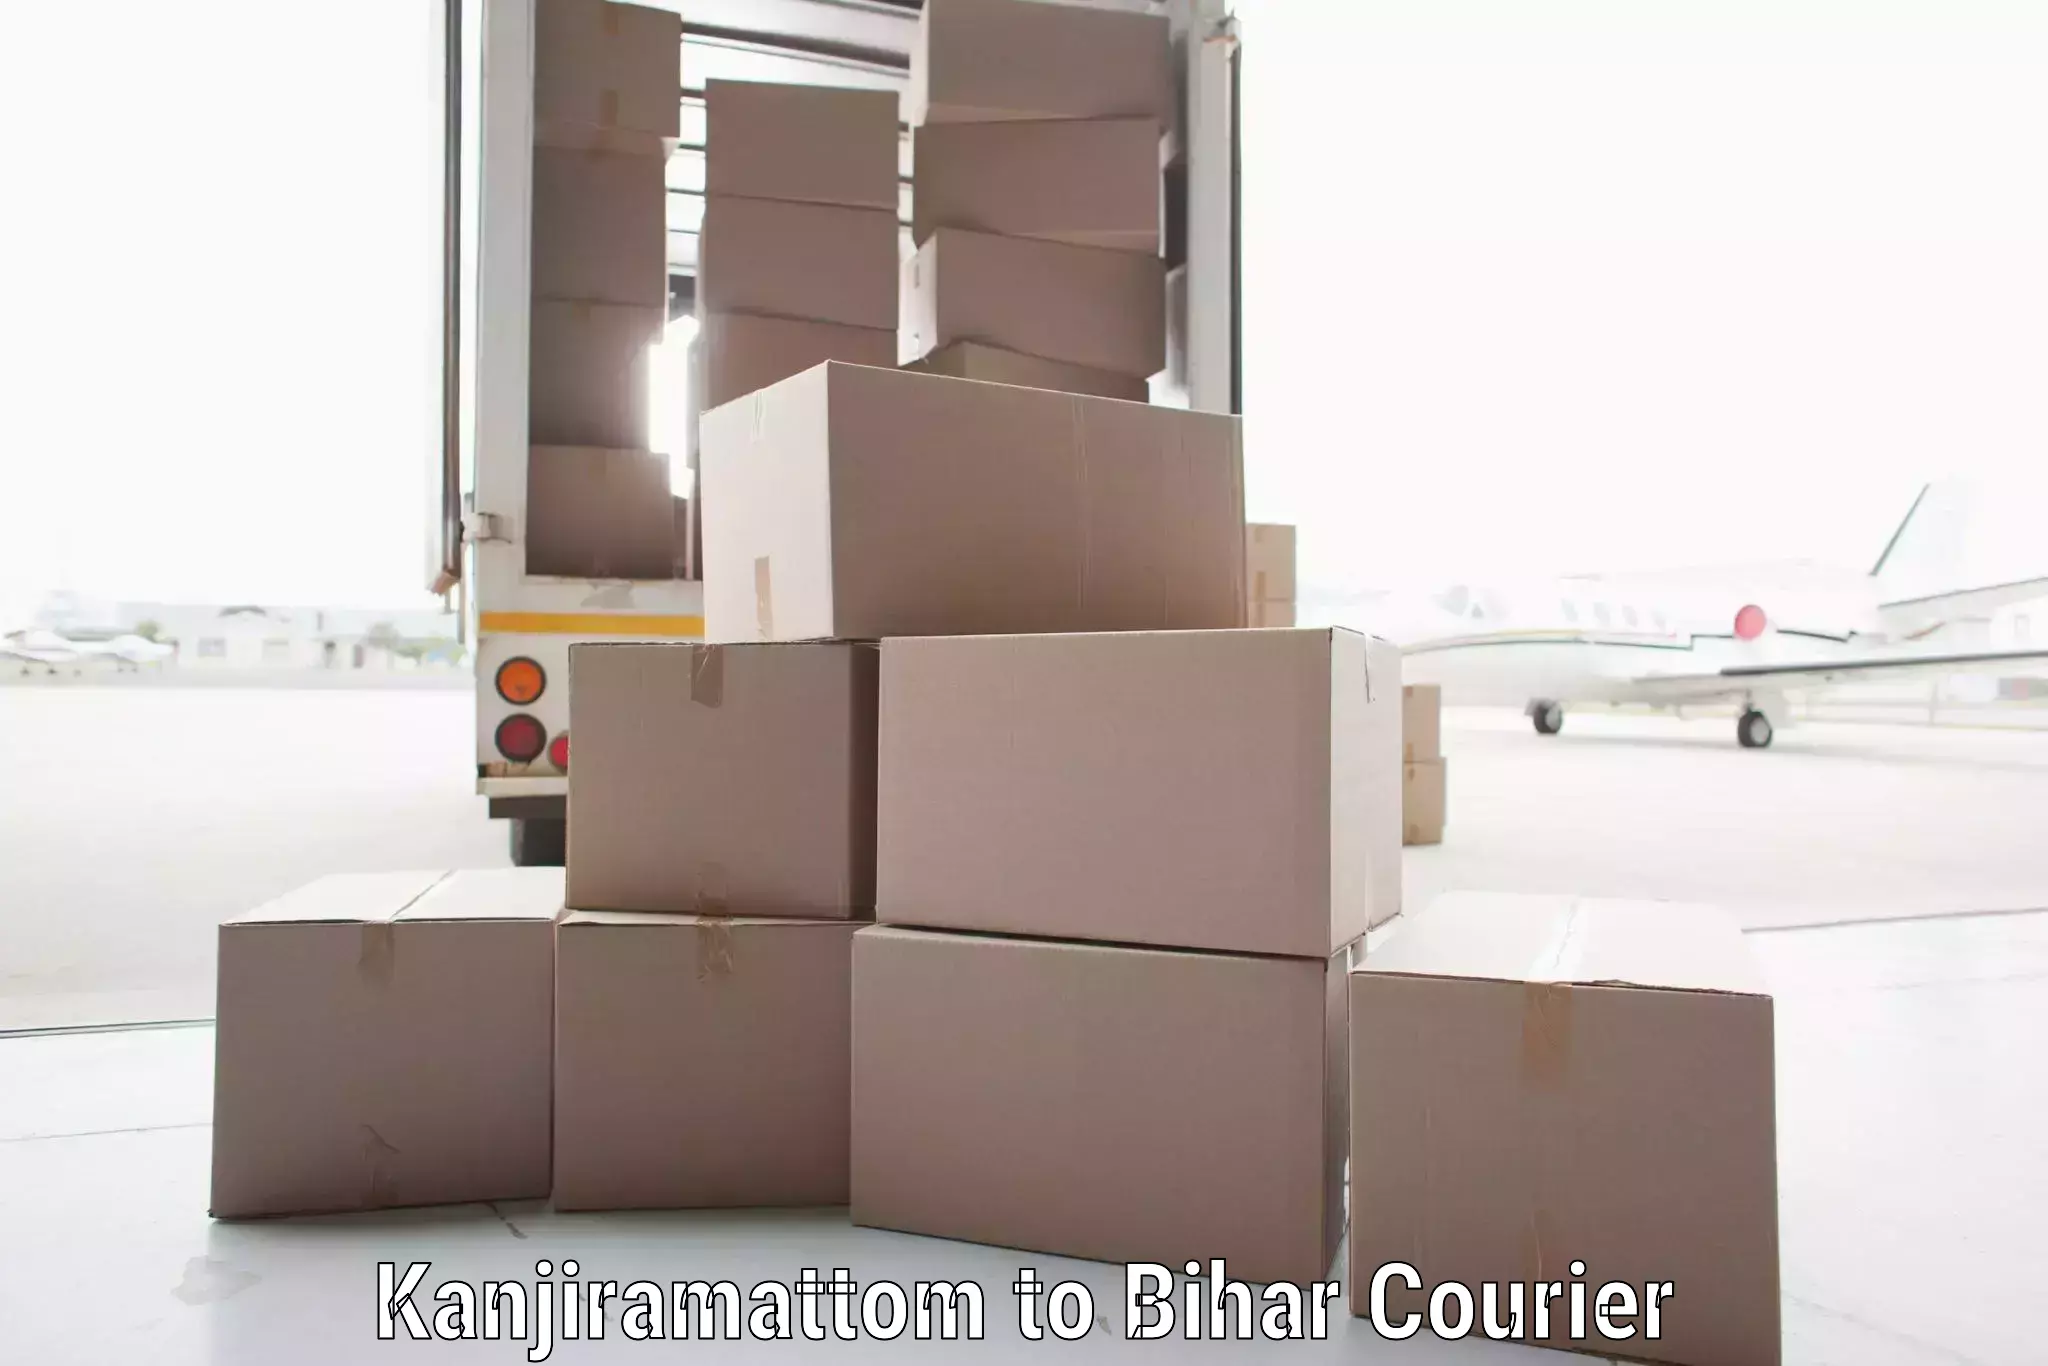 Courier service partnerships Kanjiramattom to Bihar